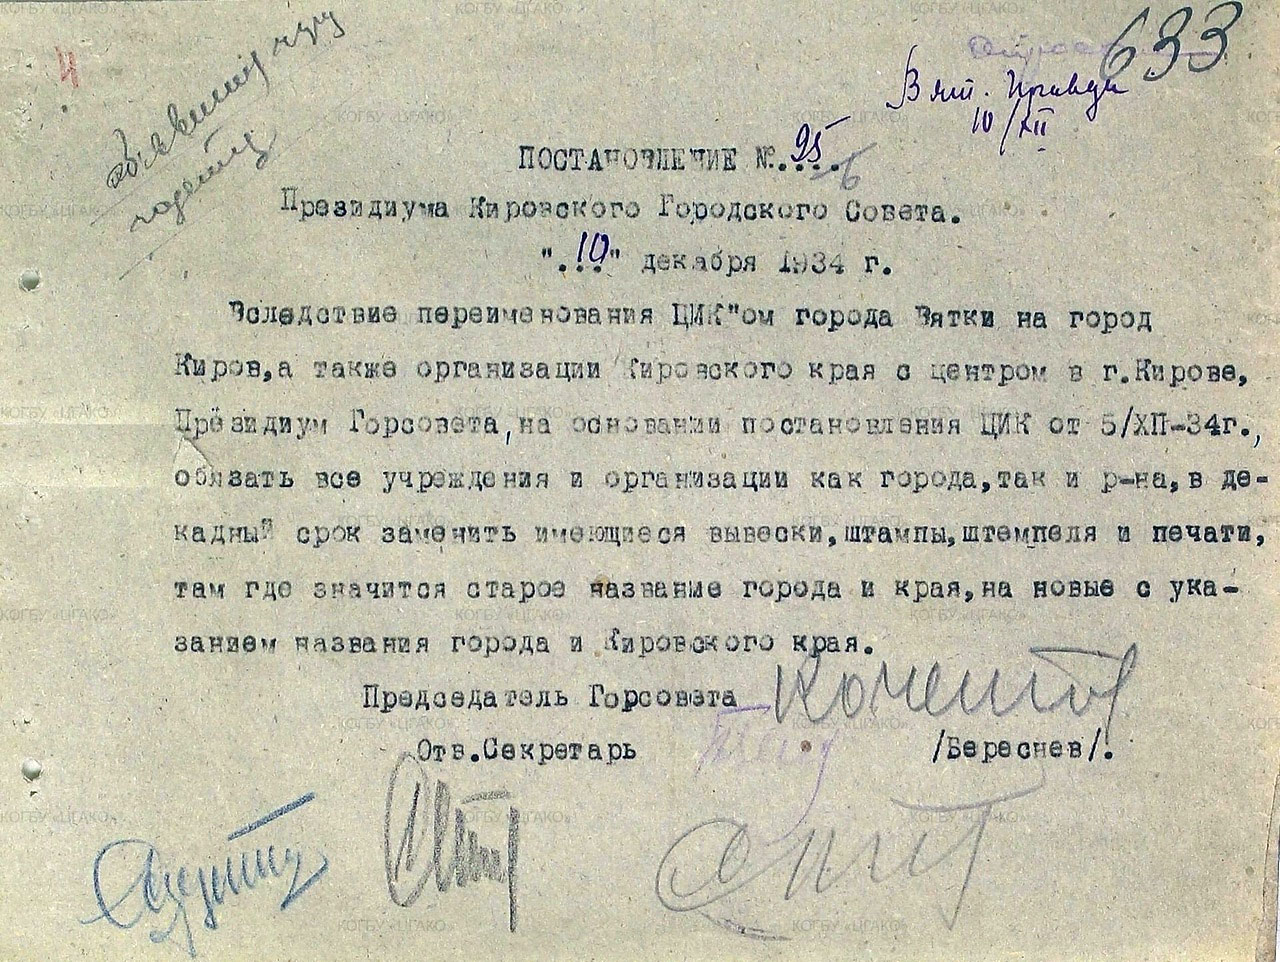 О переименовании Вятки в Киров. 1934 год